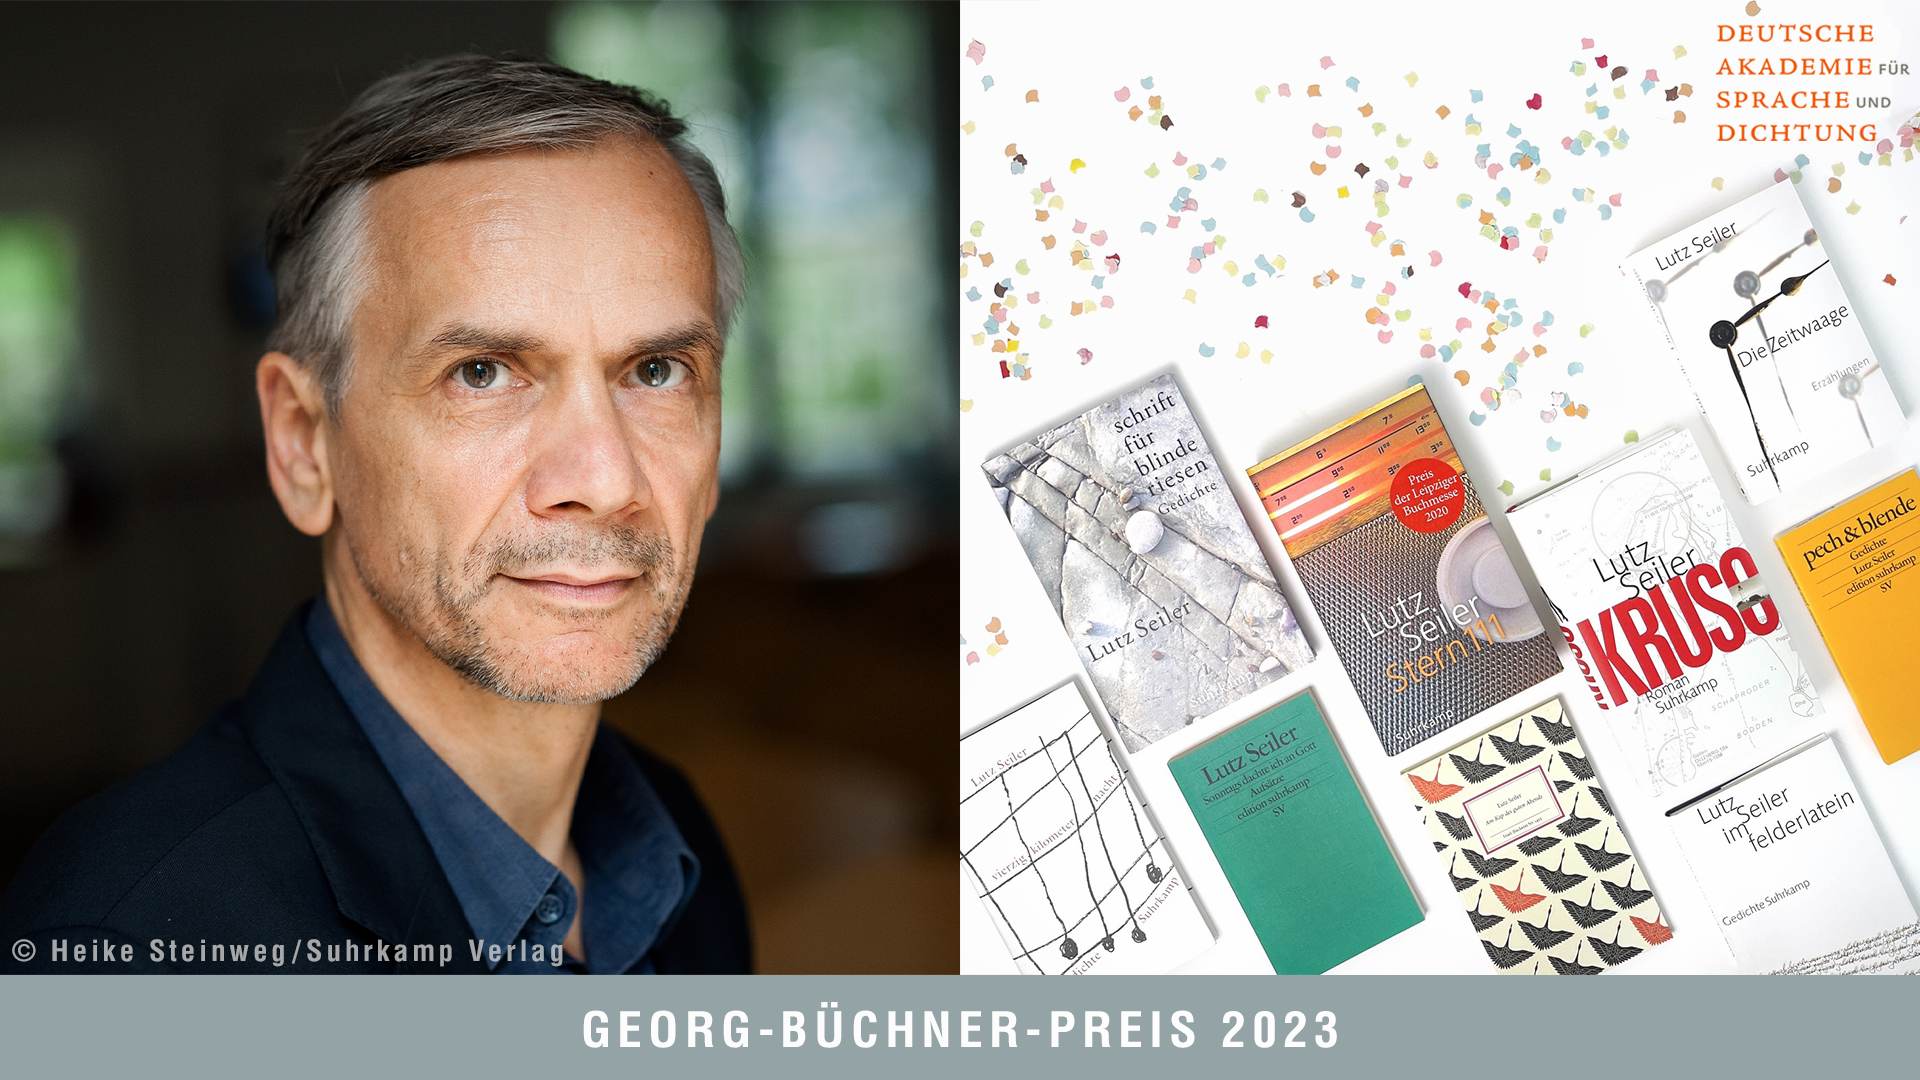 Lutz Seiler vince il Georg Büchner Preis 2023